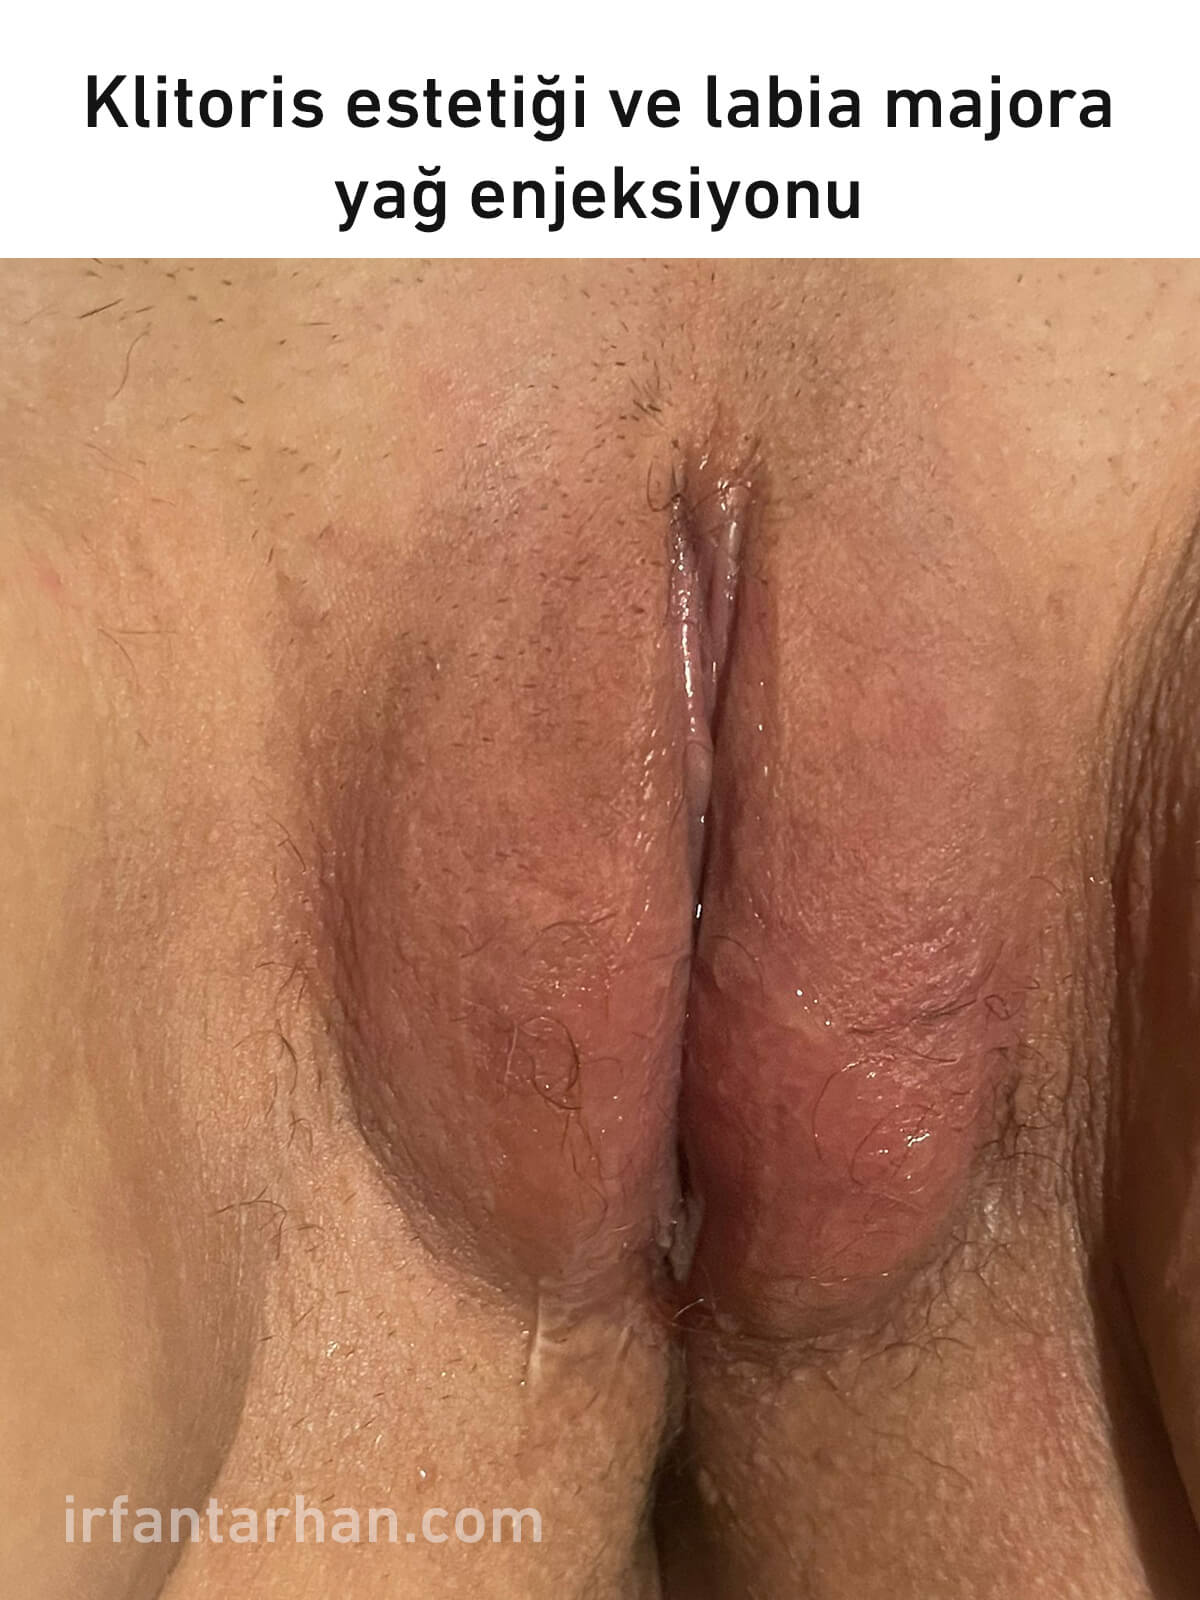 klitoris estetiği